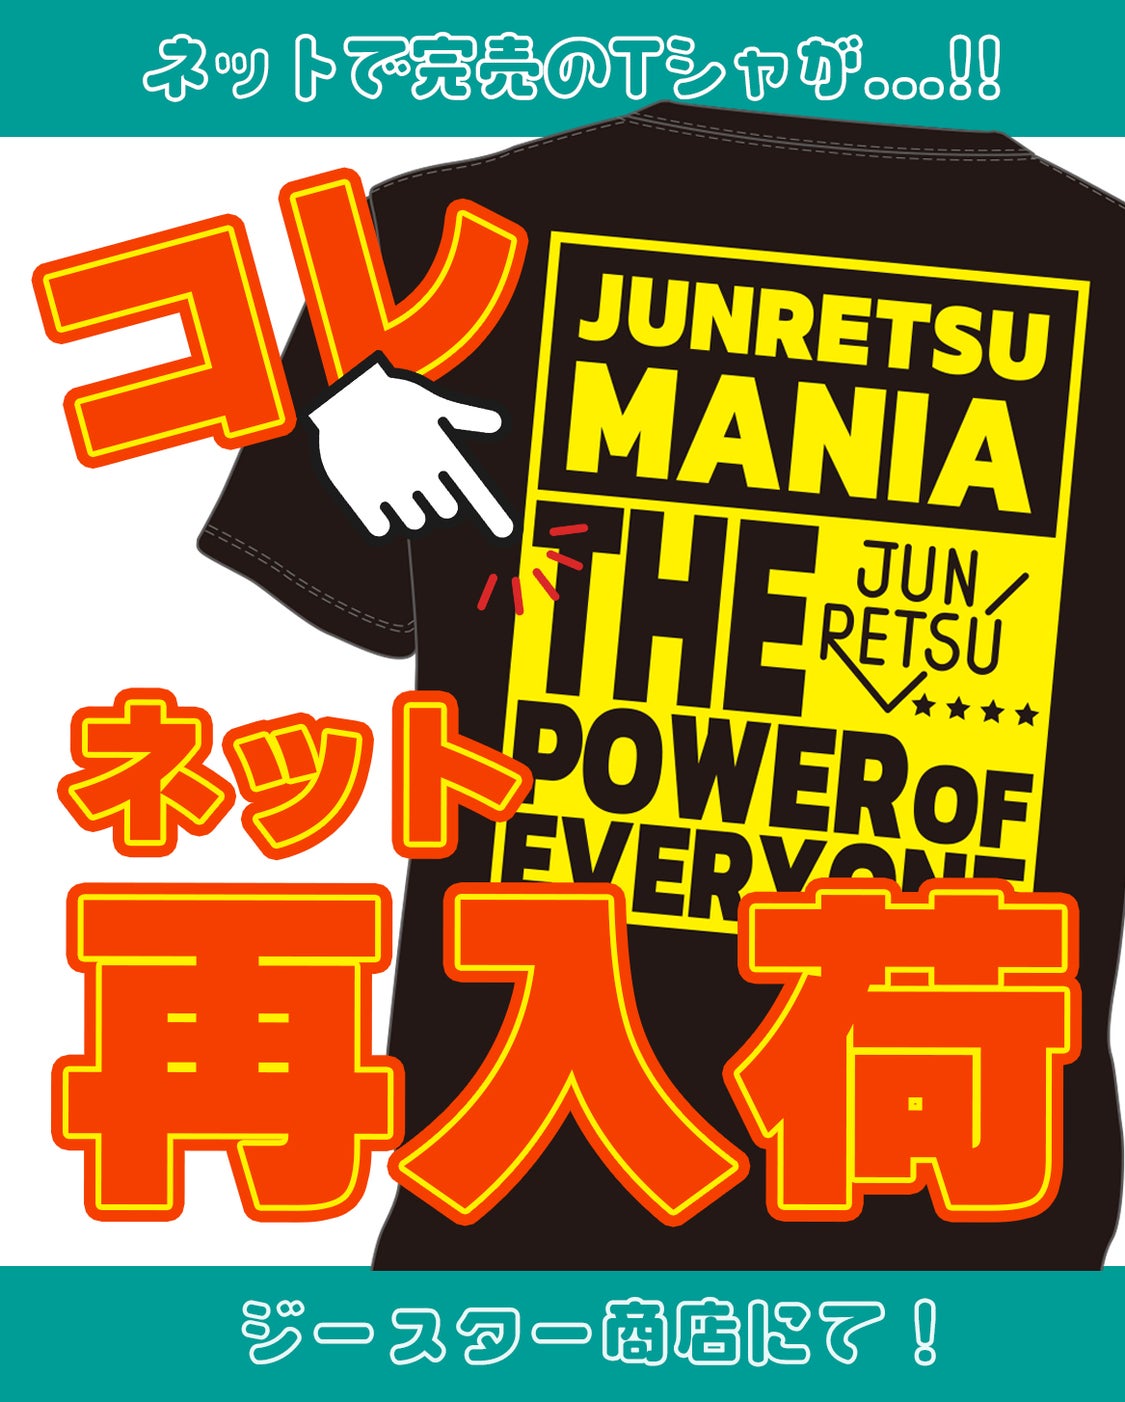 ネットで完売していた【 JUNRETSU MANIA Tシャツ】が再入荷！！！の記事より